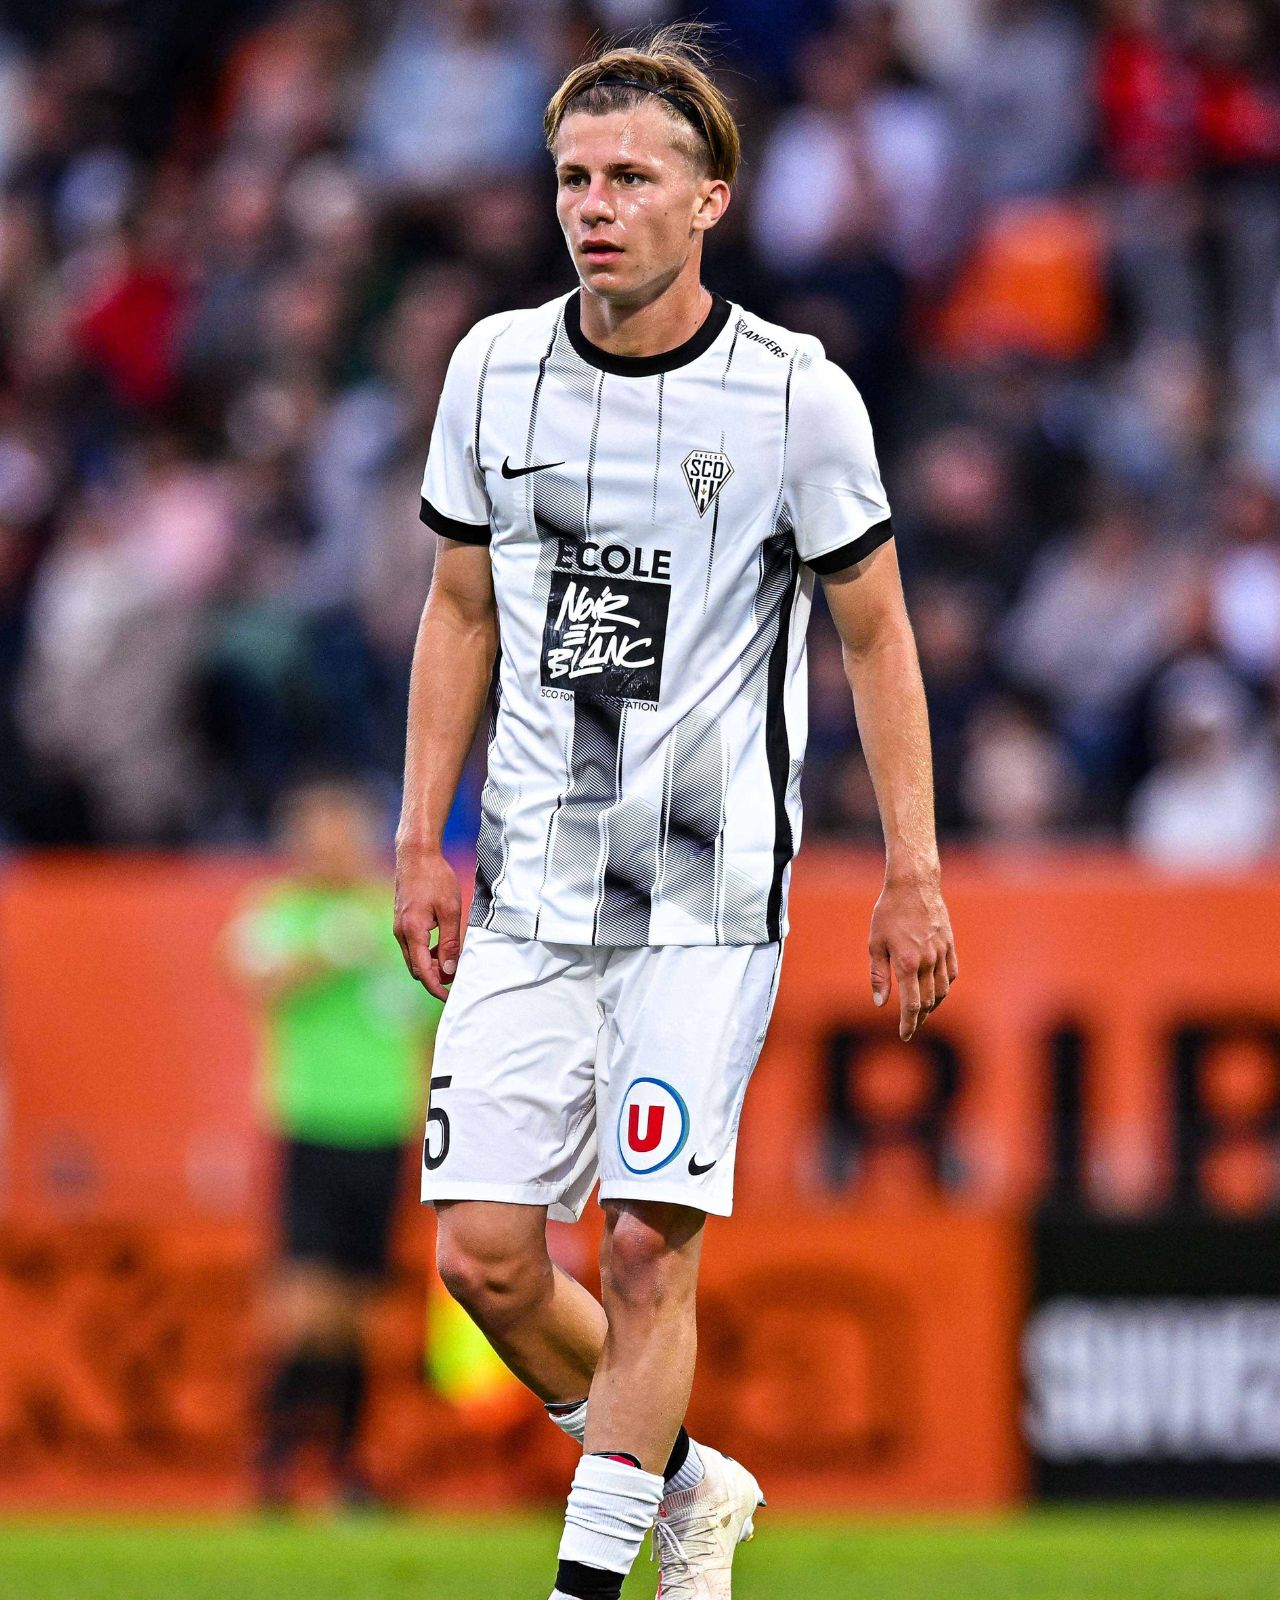 Marius Courcoul (Angers SCO) est le plus jeune joueur à avoir joué en Ligue 2 BKT cette saison.